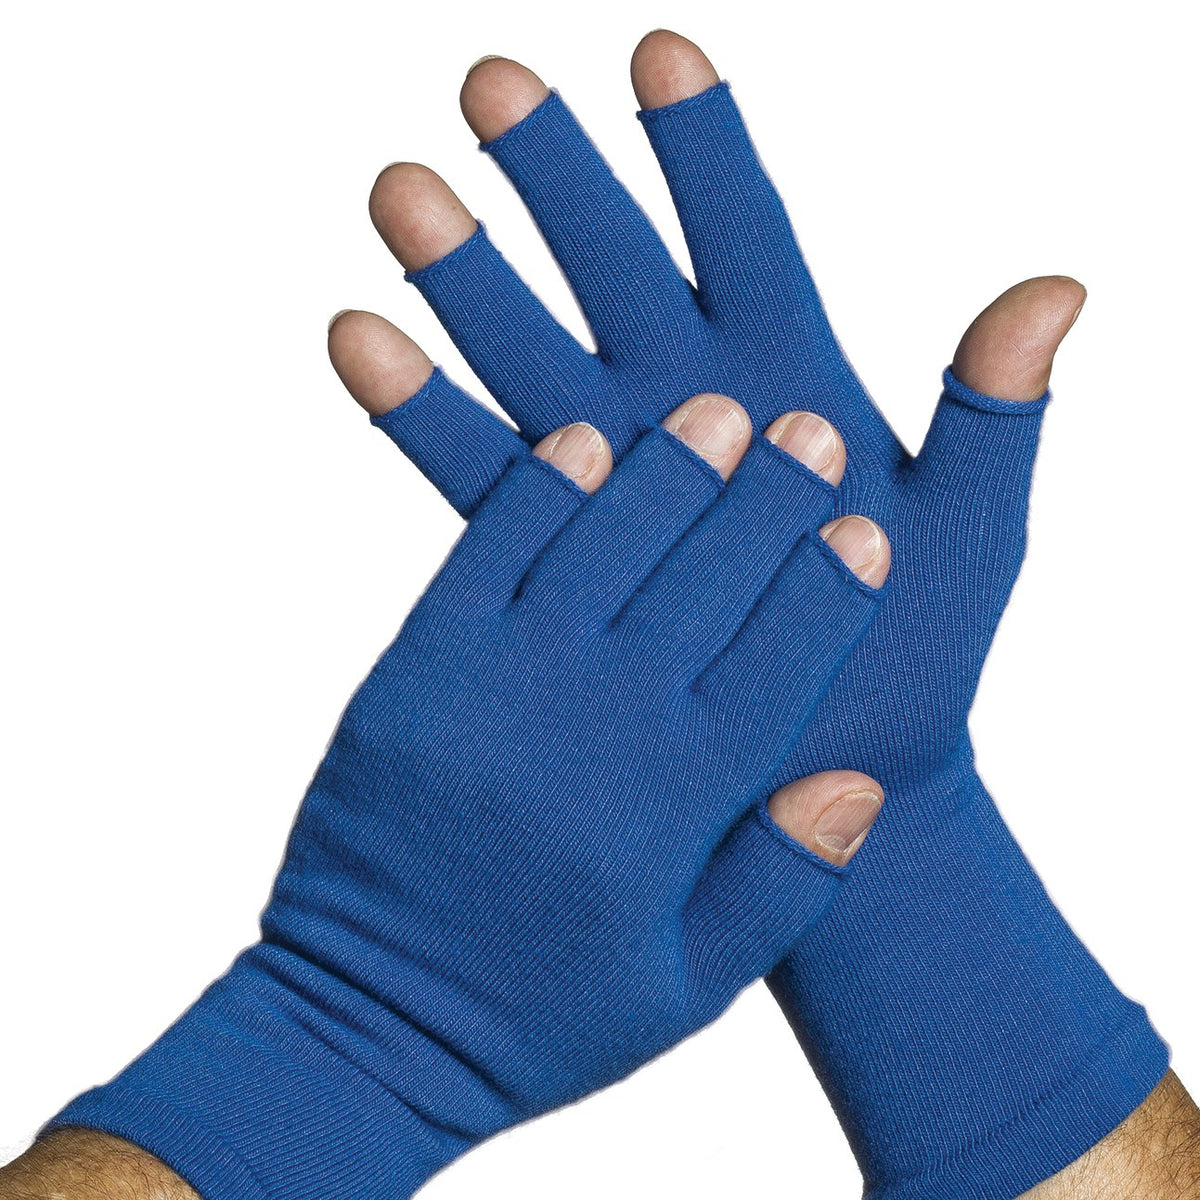 3/4 Finger Gloves, Protection for hands, Australia